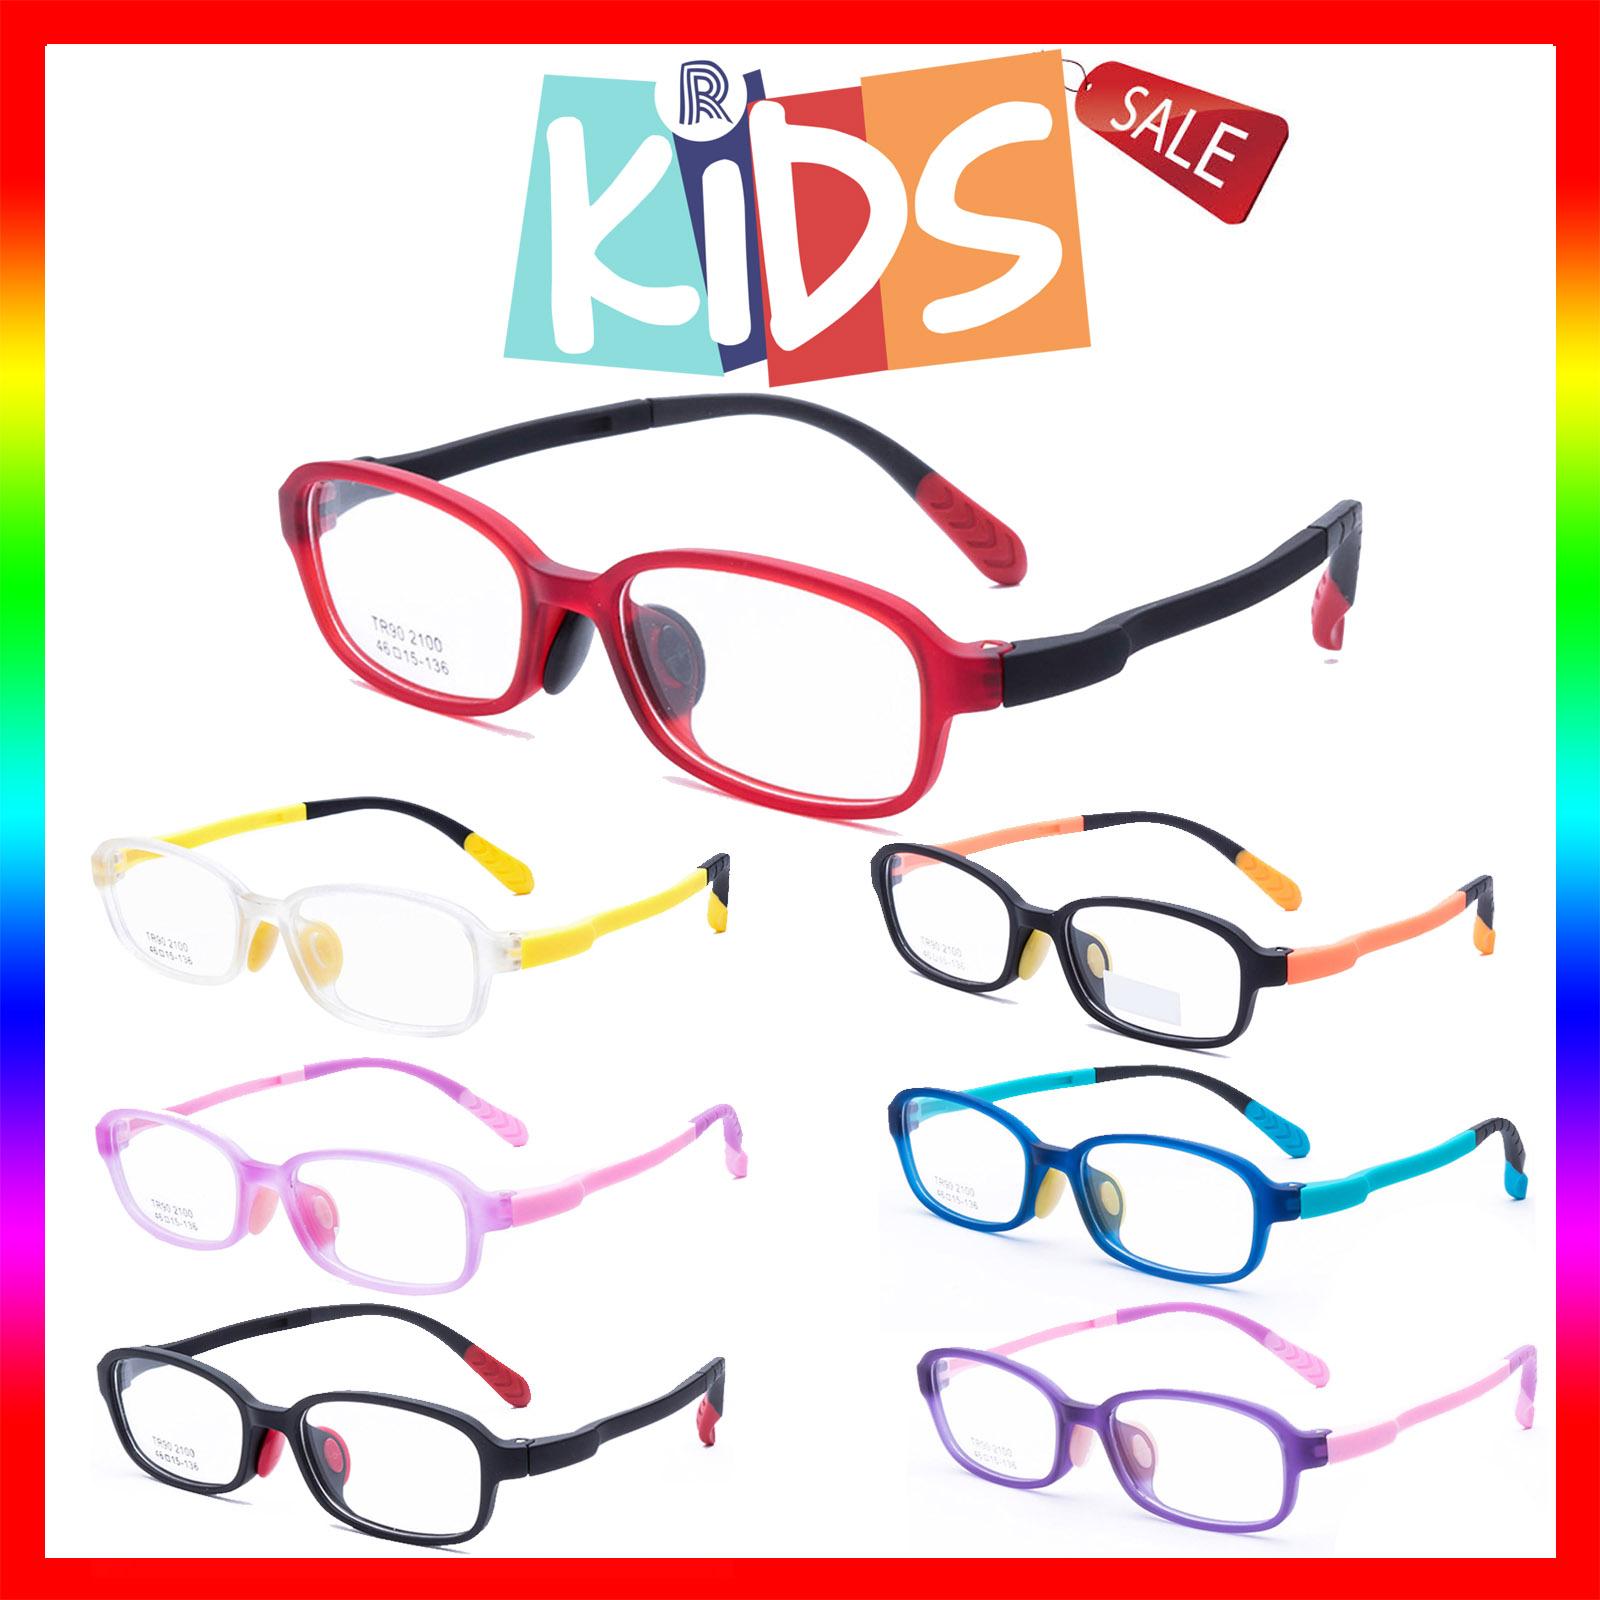 แว่นตาเกาหลีเด็ก Fashion Korea Children แว่นตาเด็ก รุ่น 2100 กรอบแว่นตาเด็ก Square ทรงสี่เหลี่ยม Eyeglass baby frame ( สำหรับตัดเลนส์ ) วัสดุ TR-90 เบาและยืดหยุนได้สูง ขาข้อต่อ Kid eyewear Glasses